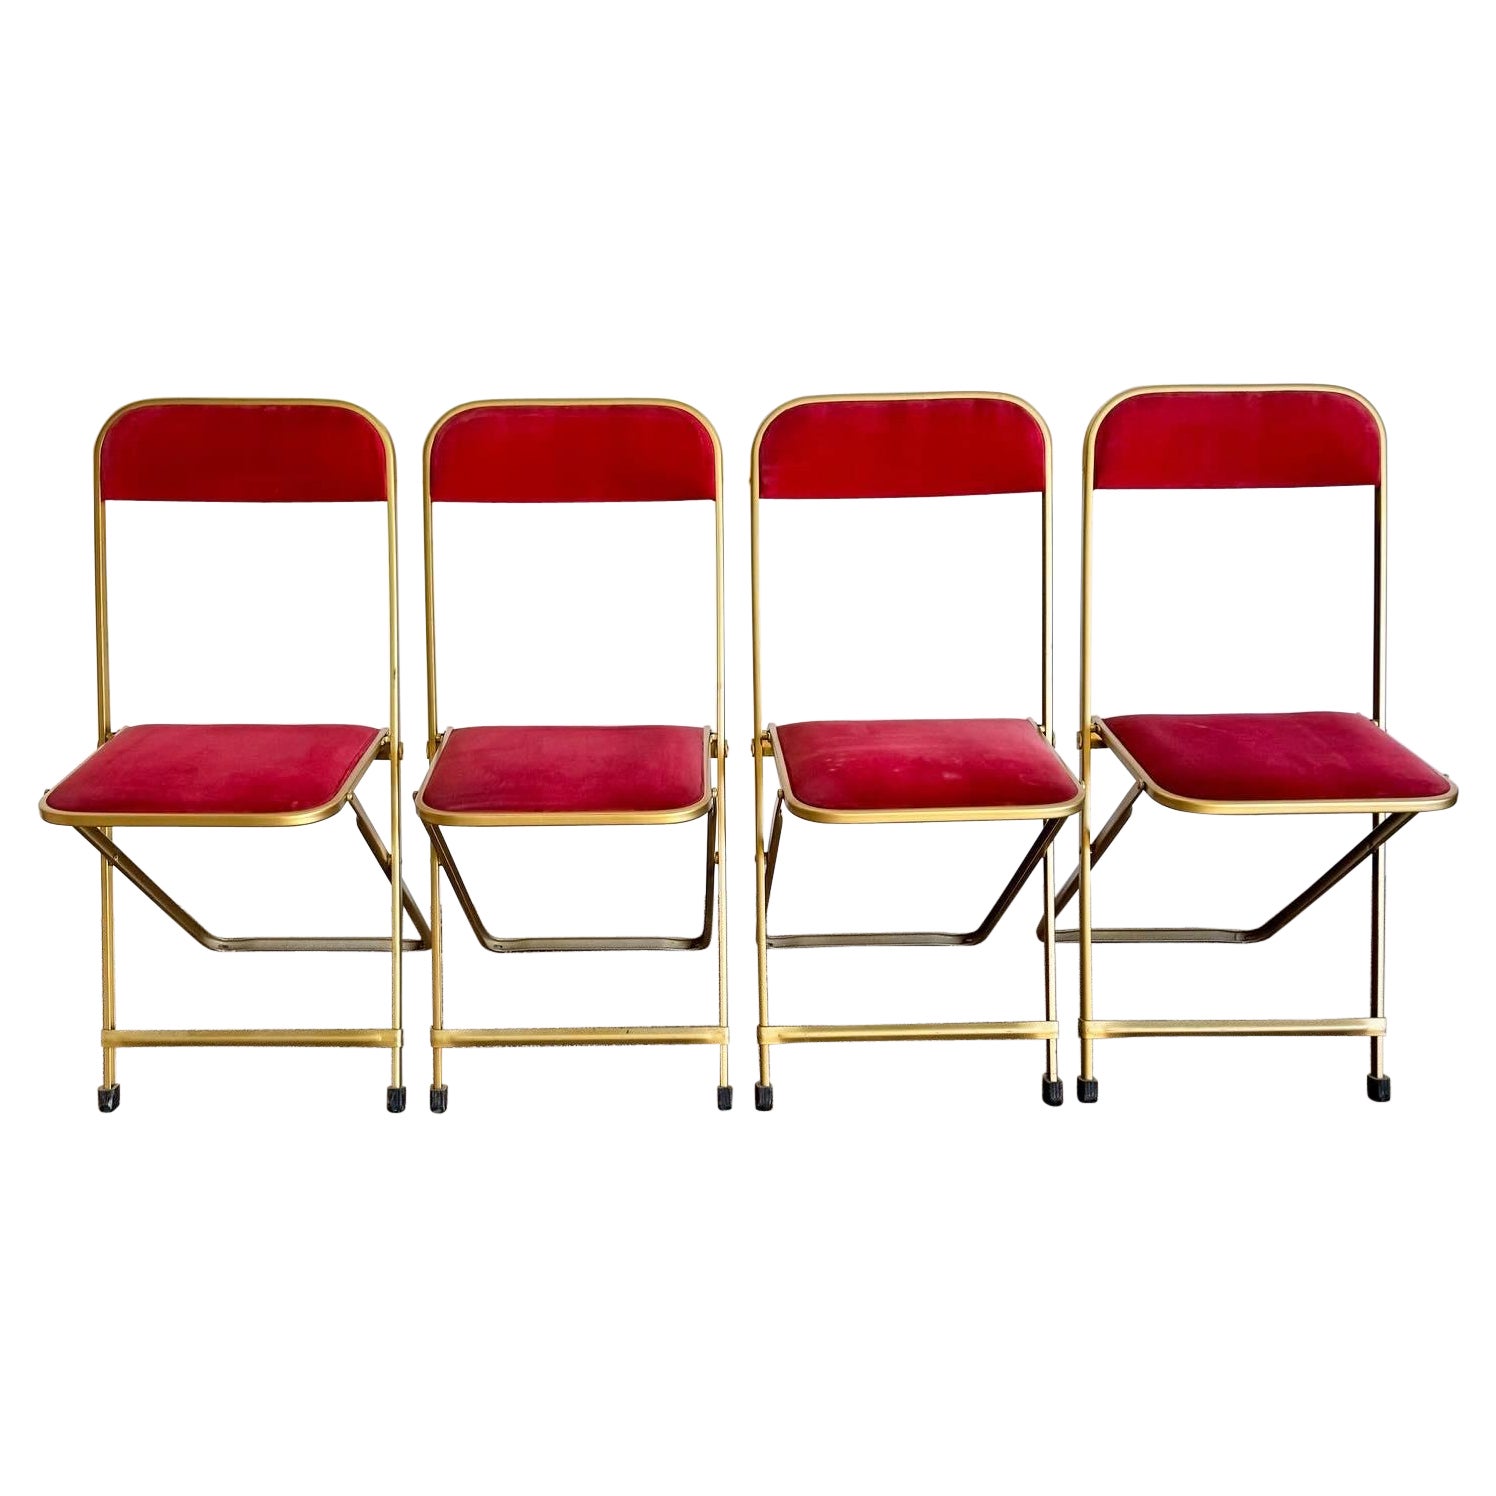 Chaises pliantes vintage dorées et rouges de A. Fritz and Co - Lot de 4